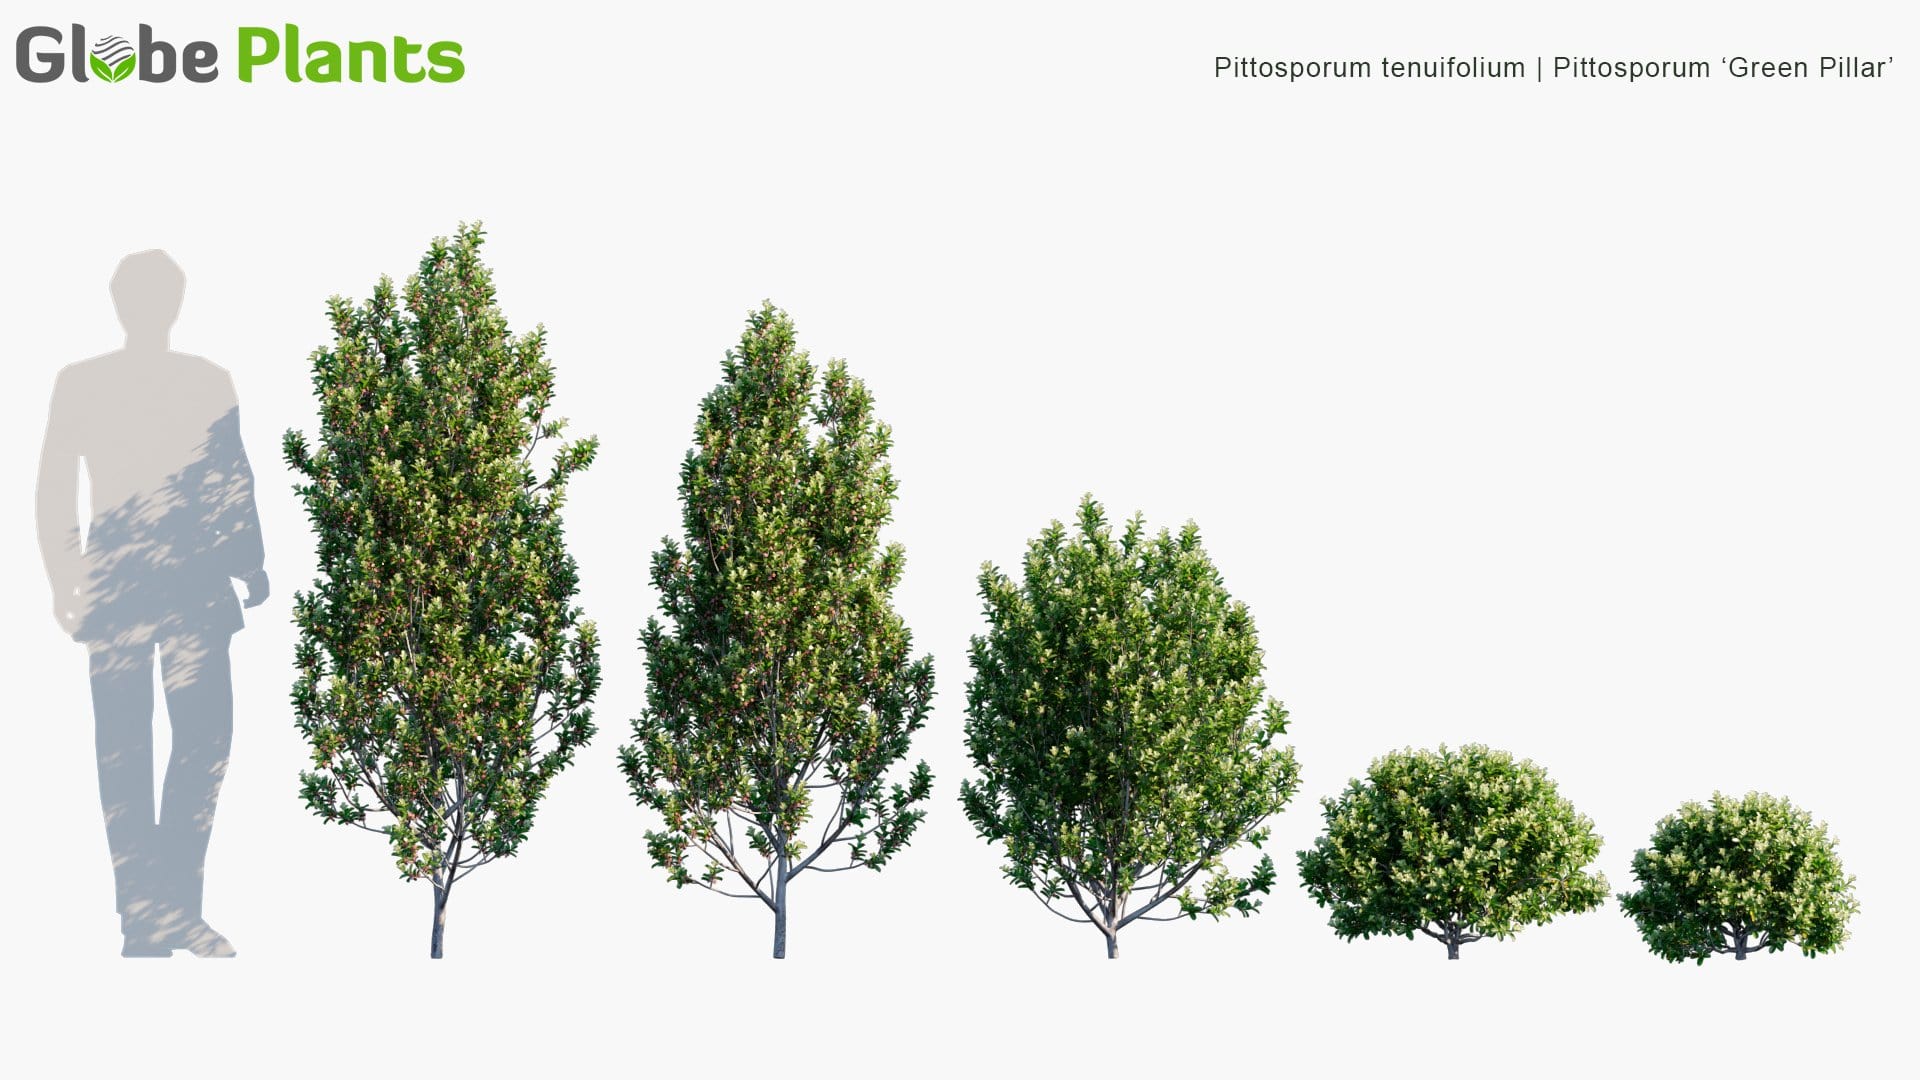 Pittosporum Tenuifolium - Pittosporum 'Green Pillar' (3D Model)